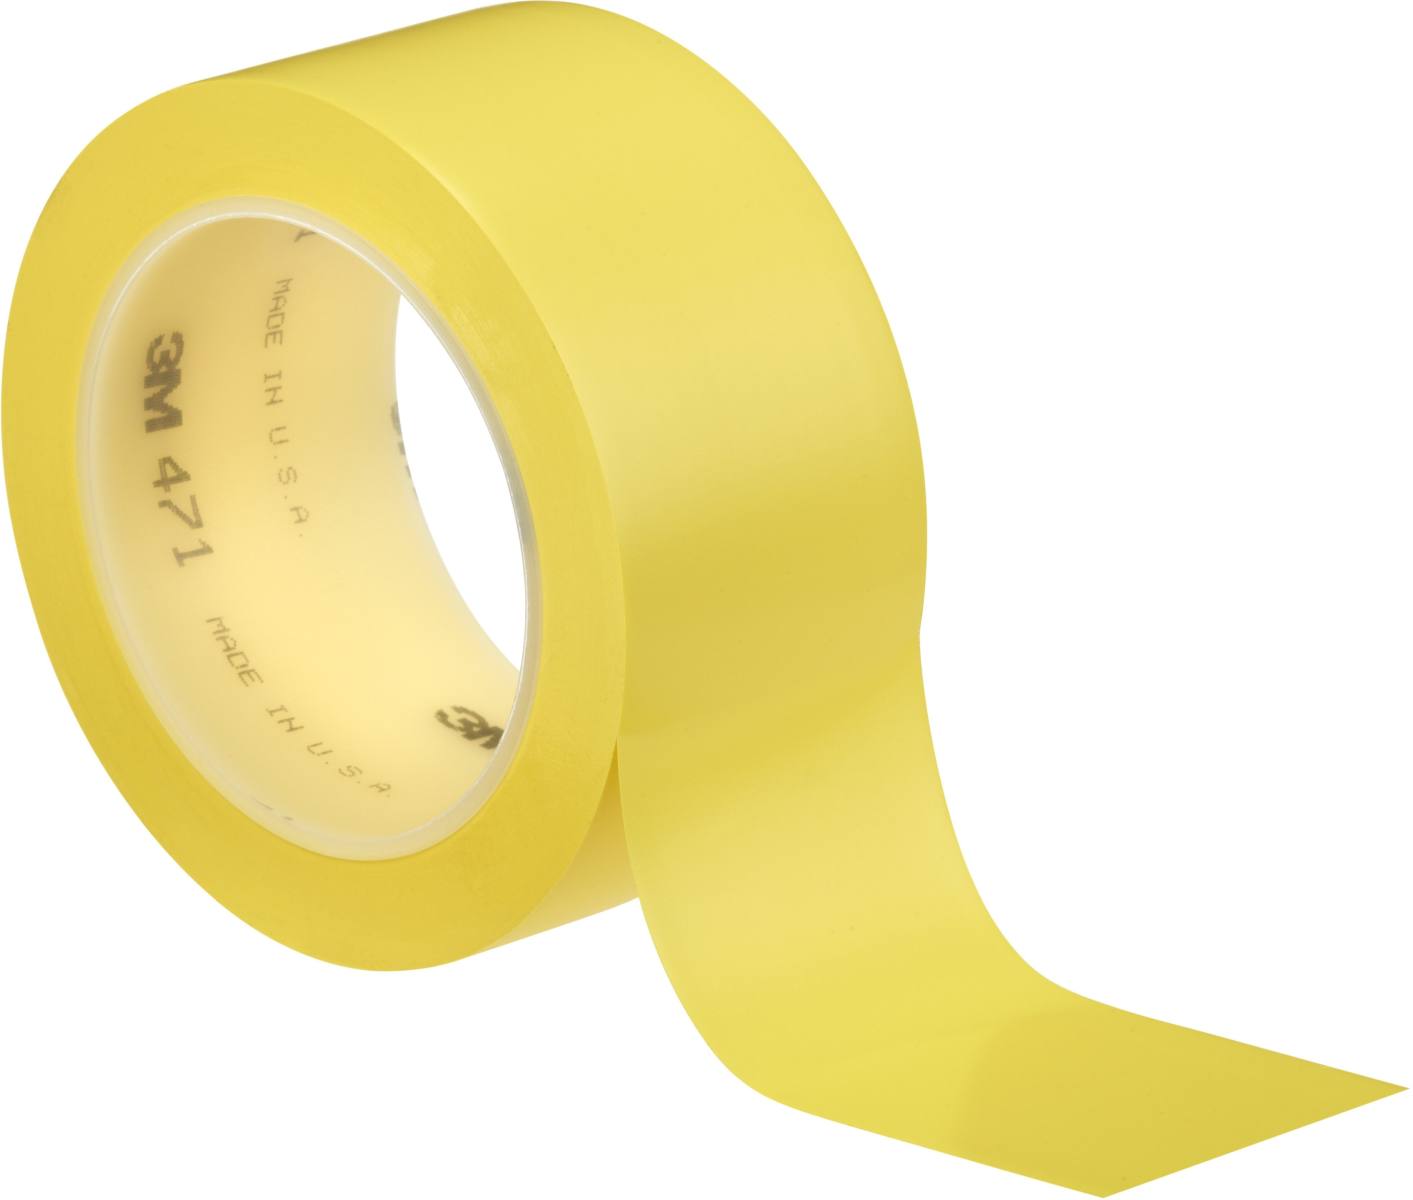 Nastro adesivo 3M in PVC morbido 471 F, giallo, 25 mm x 33 m, 0,13 mm